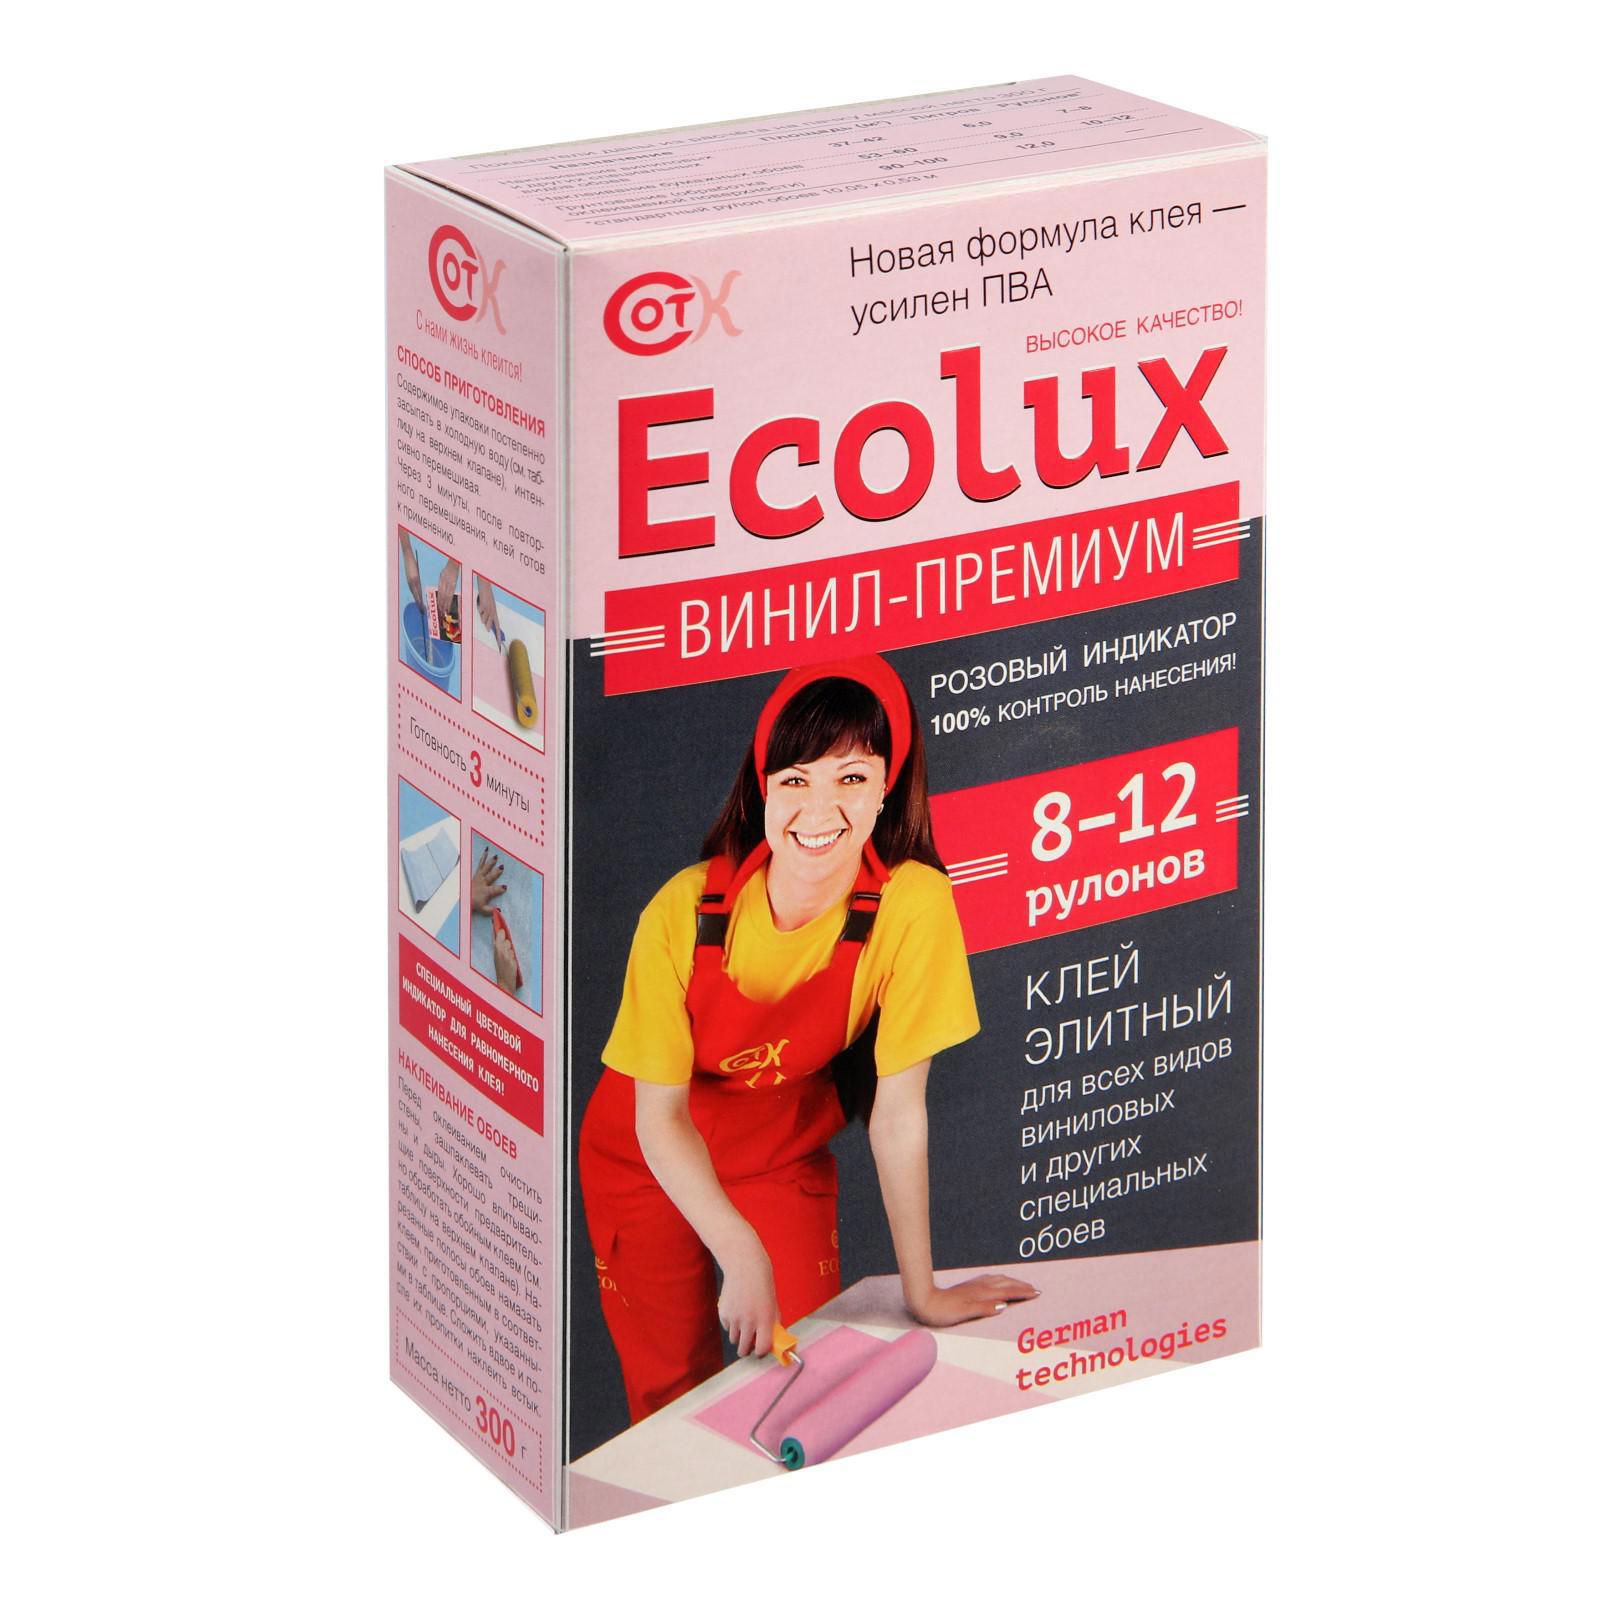  обойный ECOLUX Премиум виниловый 300 г, 10 м2 по цене 179 ₽/шт .